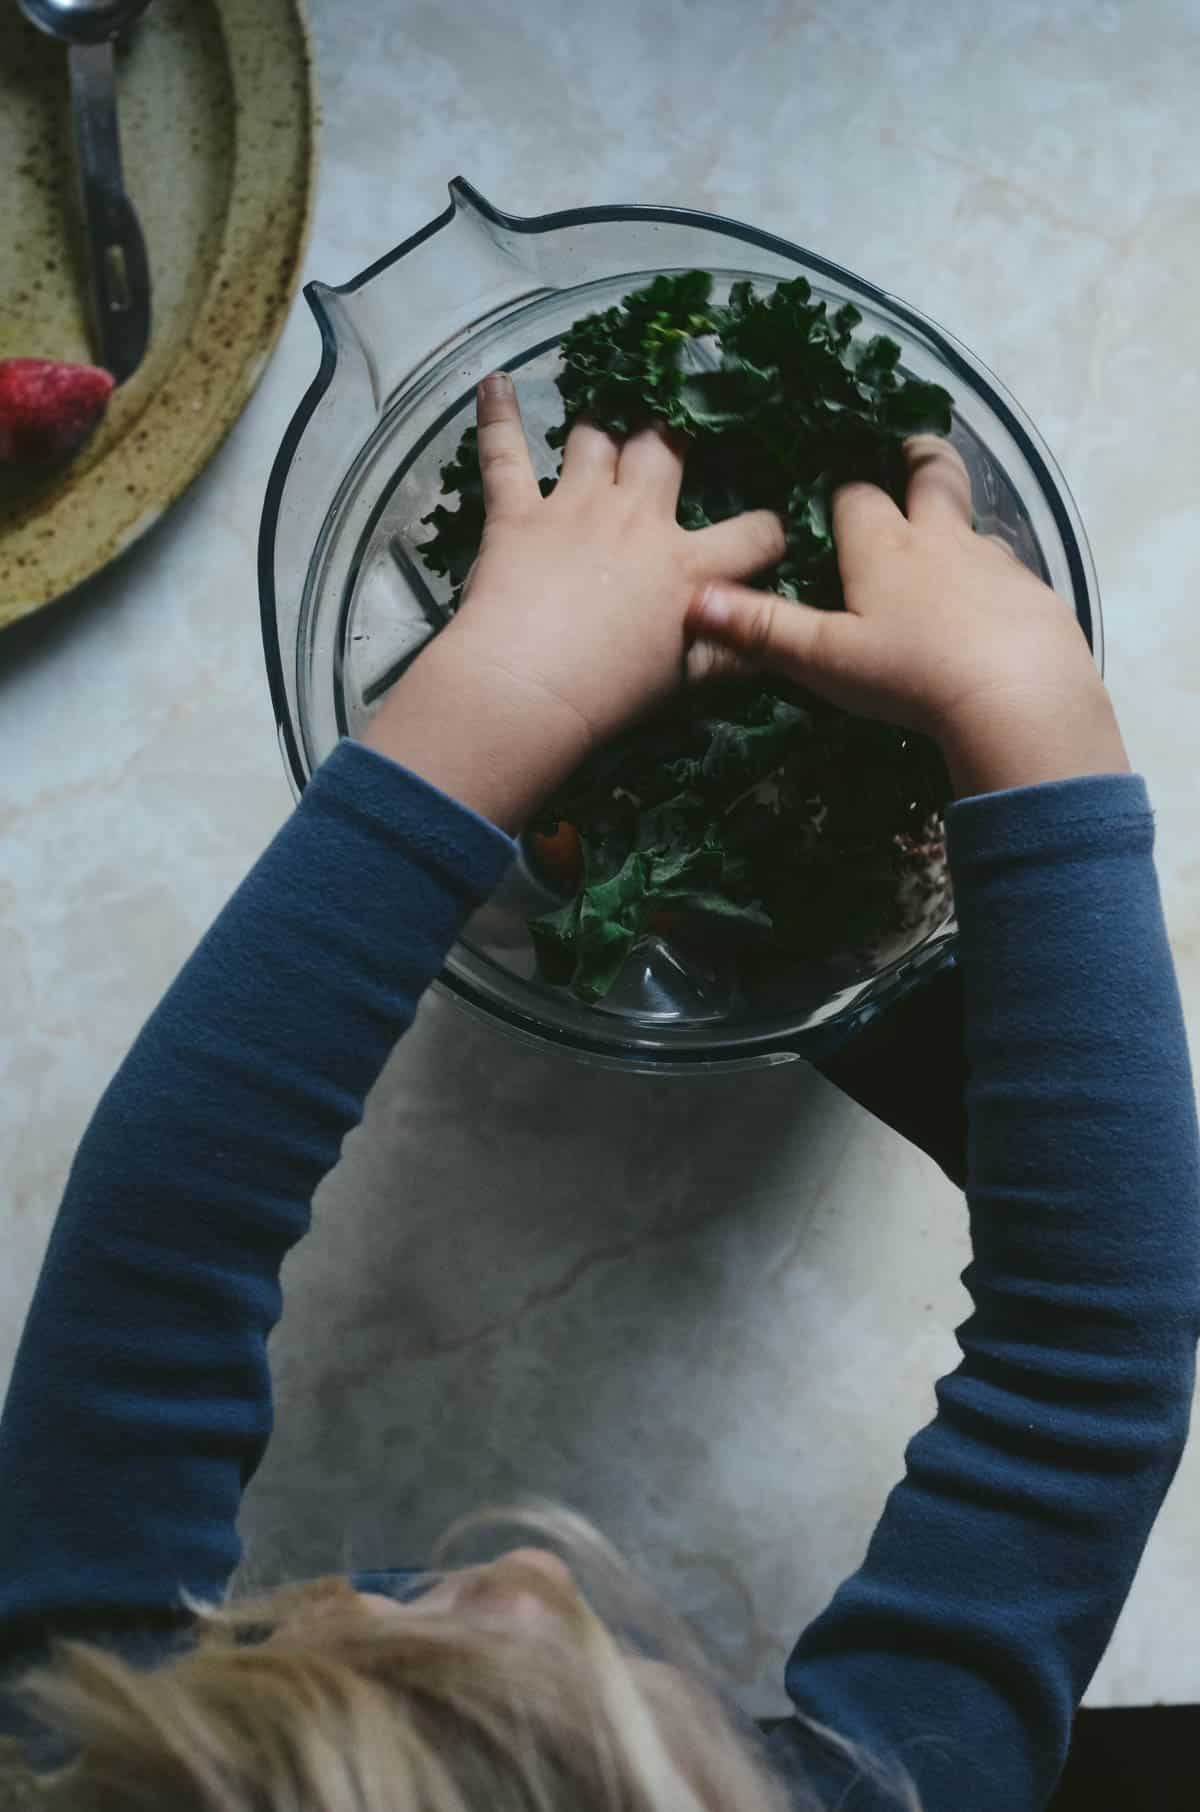 Toddler placing kale in vitamix blender.